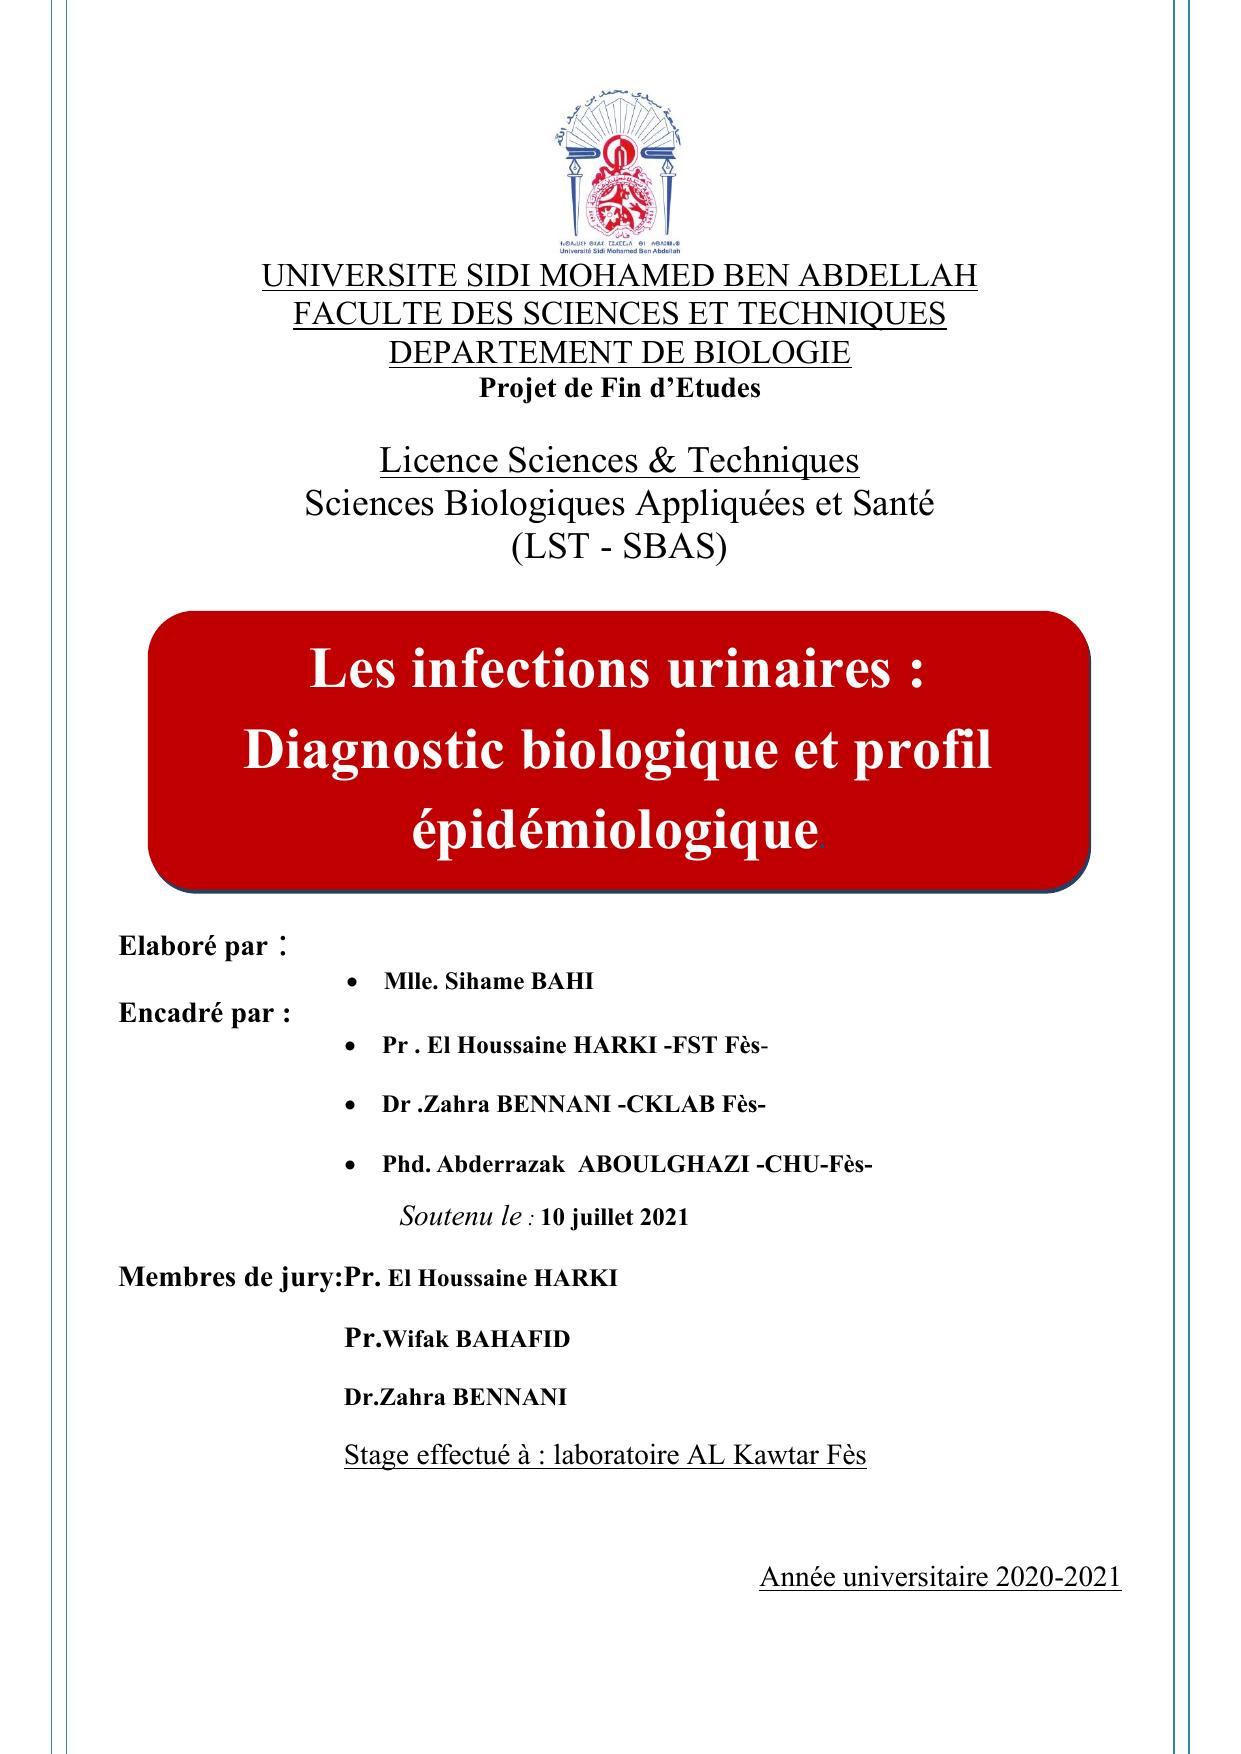 PFE -LST-SBAS : S .BAHI:Les infections urinaires : Diagnostic biologique et profil épidémiologque